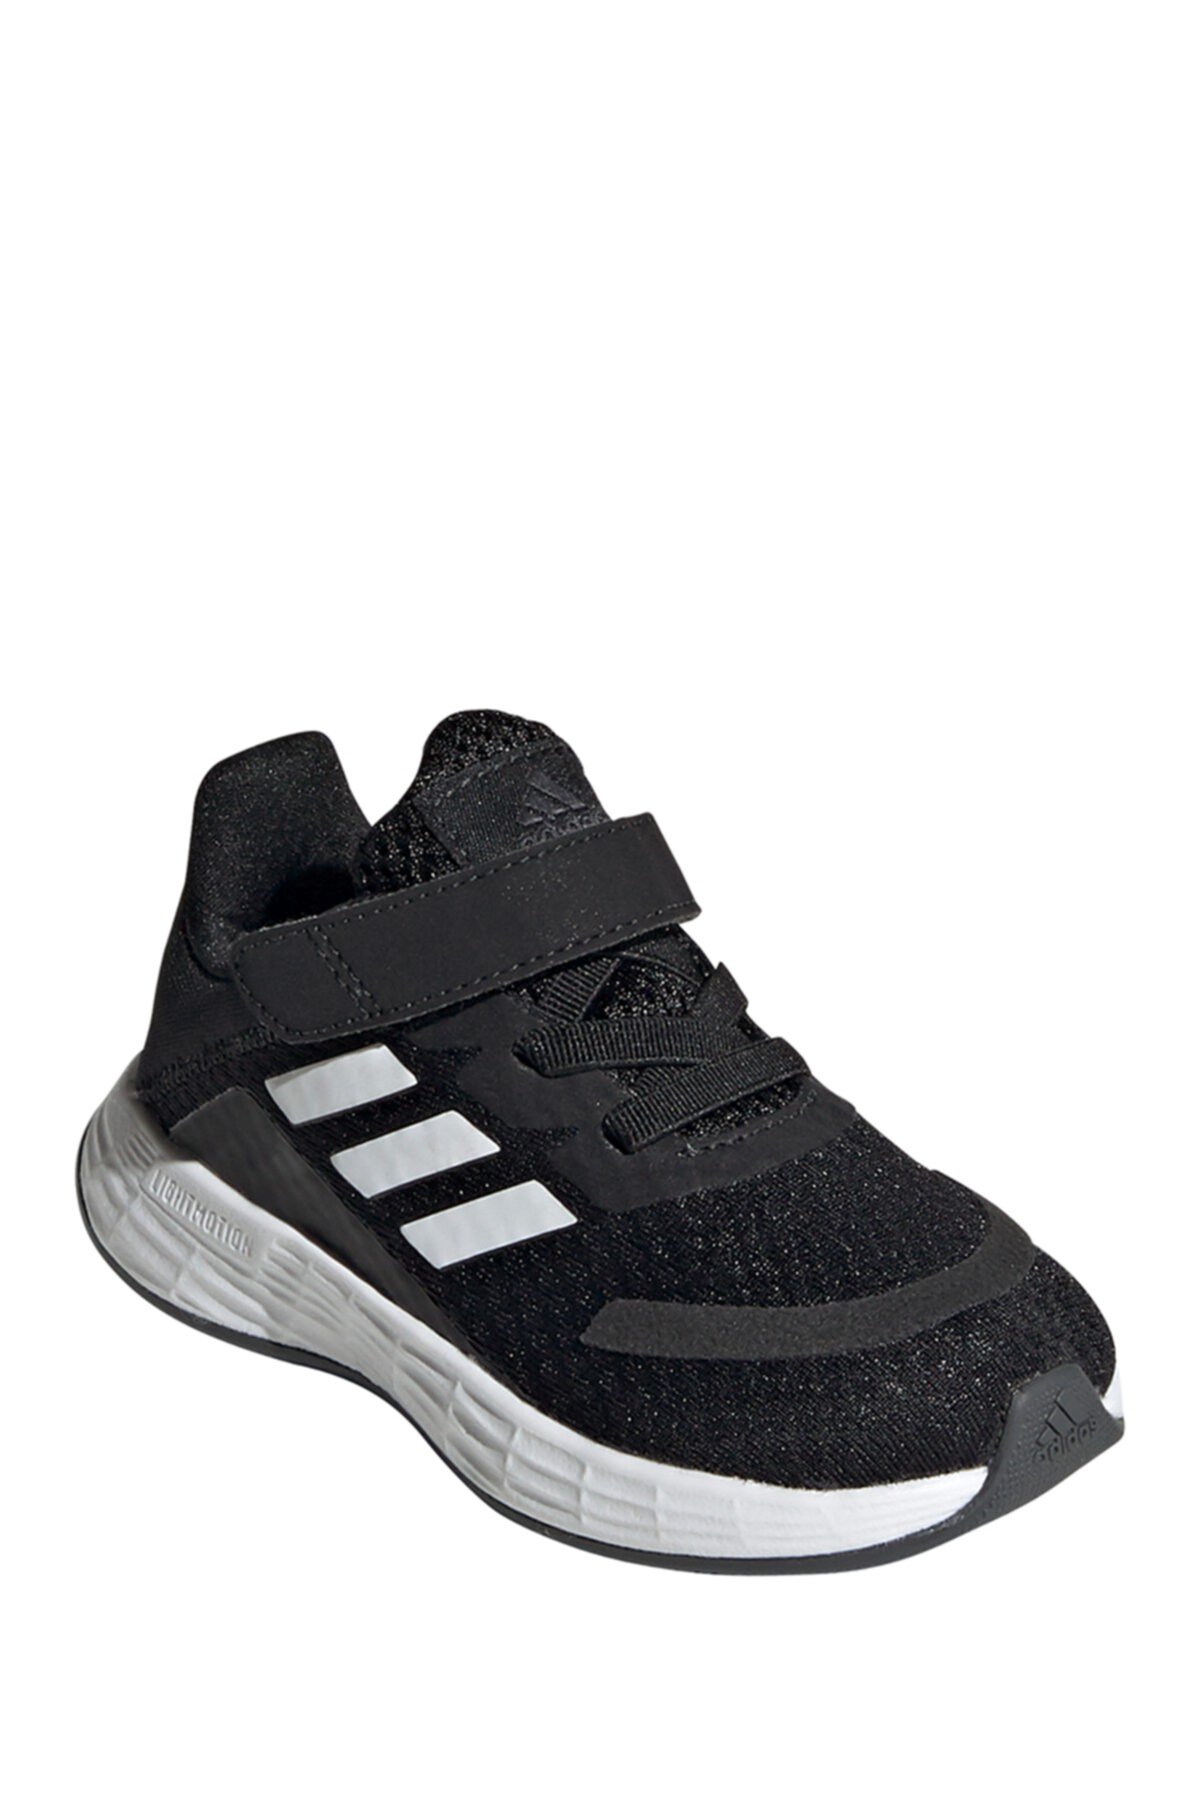 Кроссовки Duramo SL (для малышей) Adidas